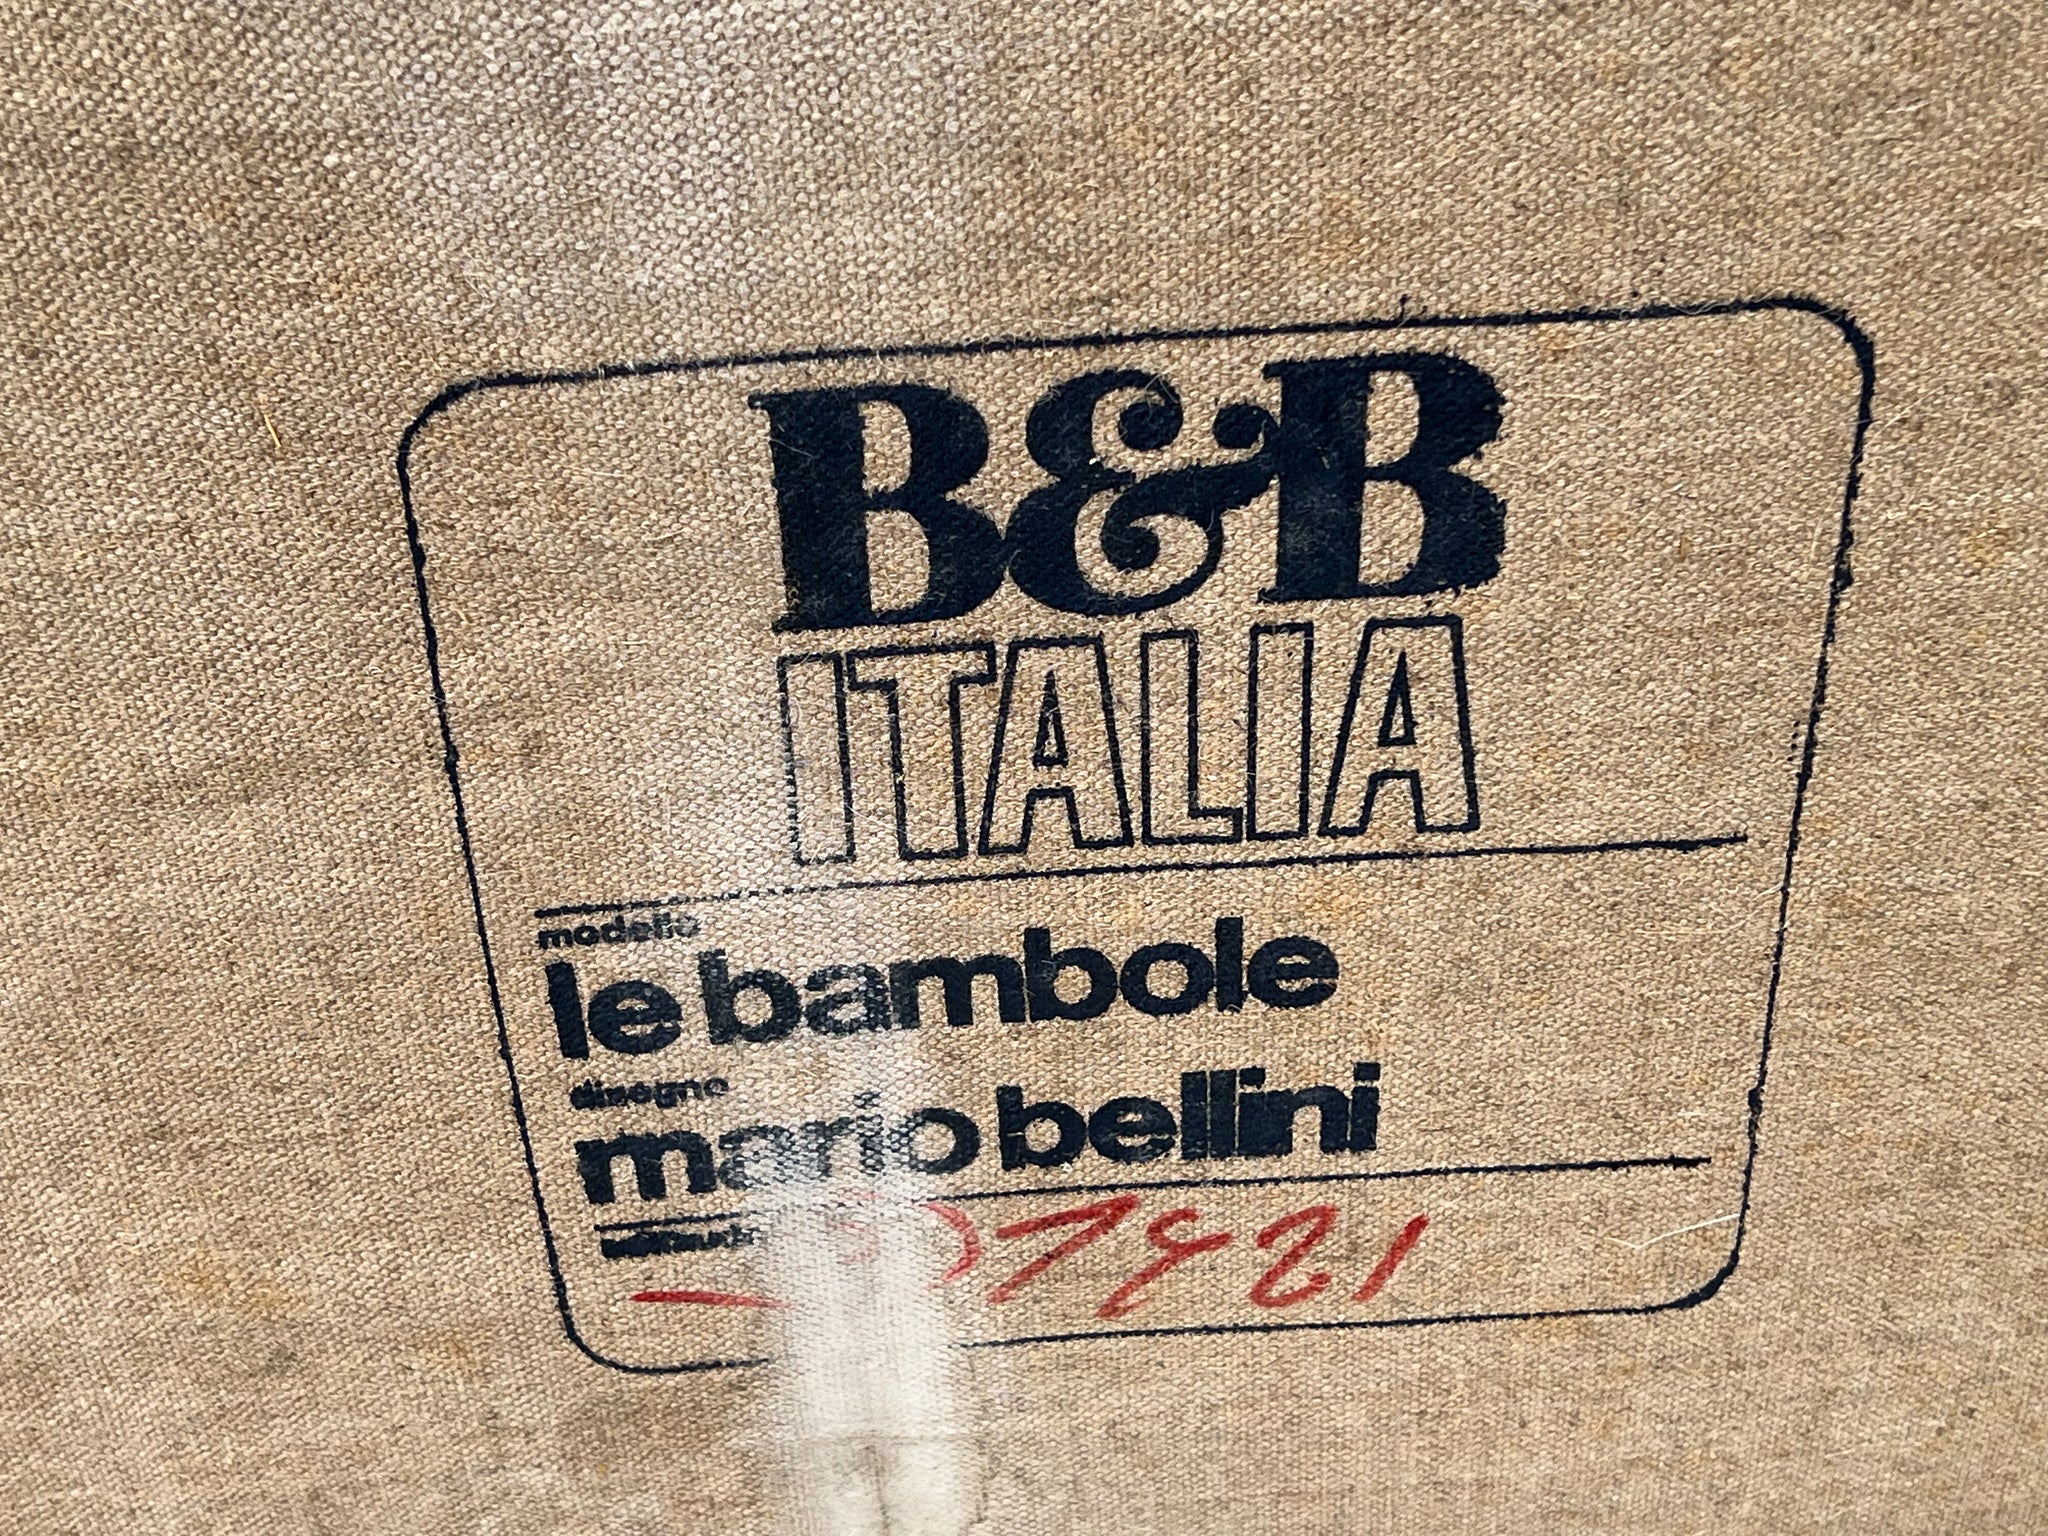 1972 Mario Bellini Leather Le Bambole Sofa for B&B Italia